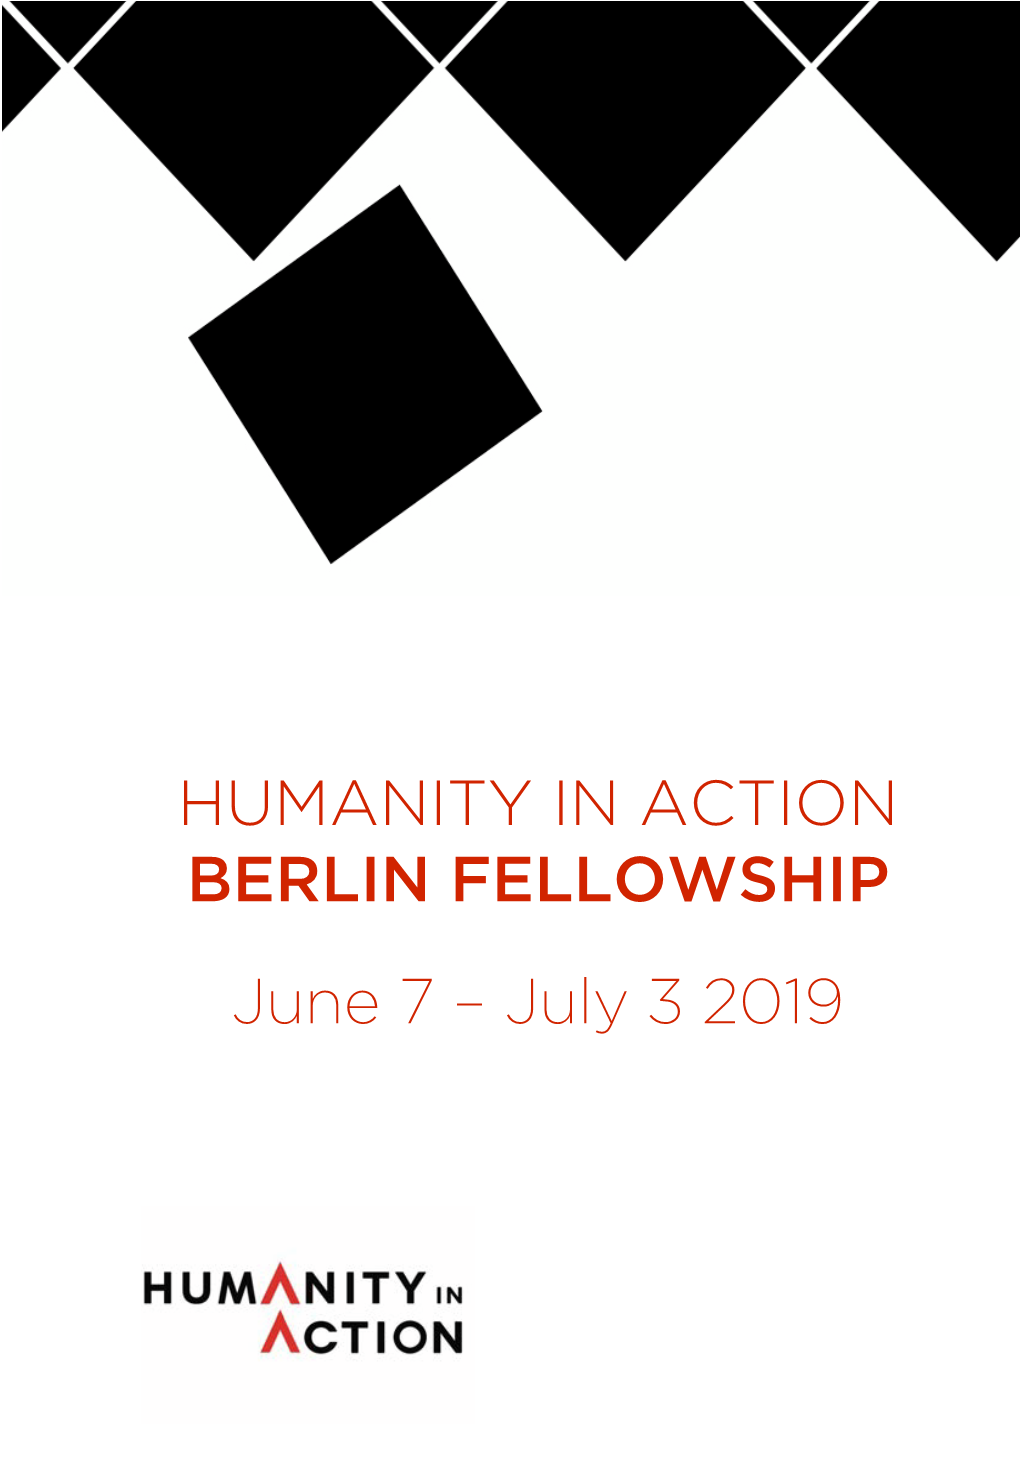 Download 2019 Berlin Fellowship Program